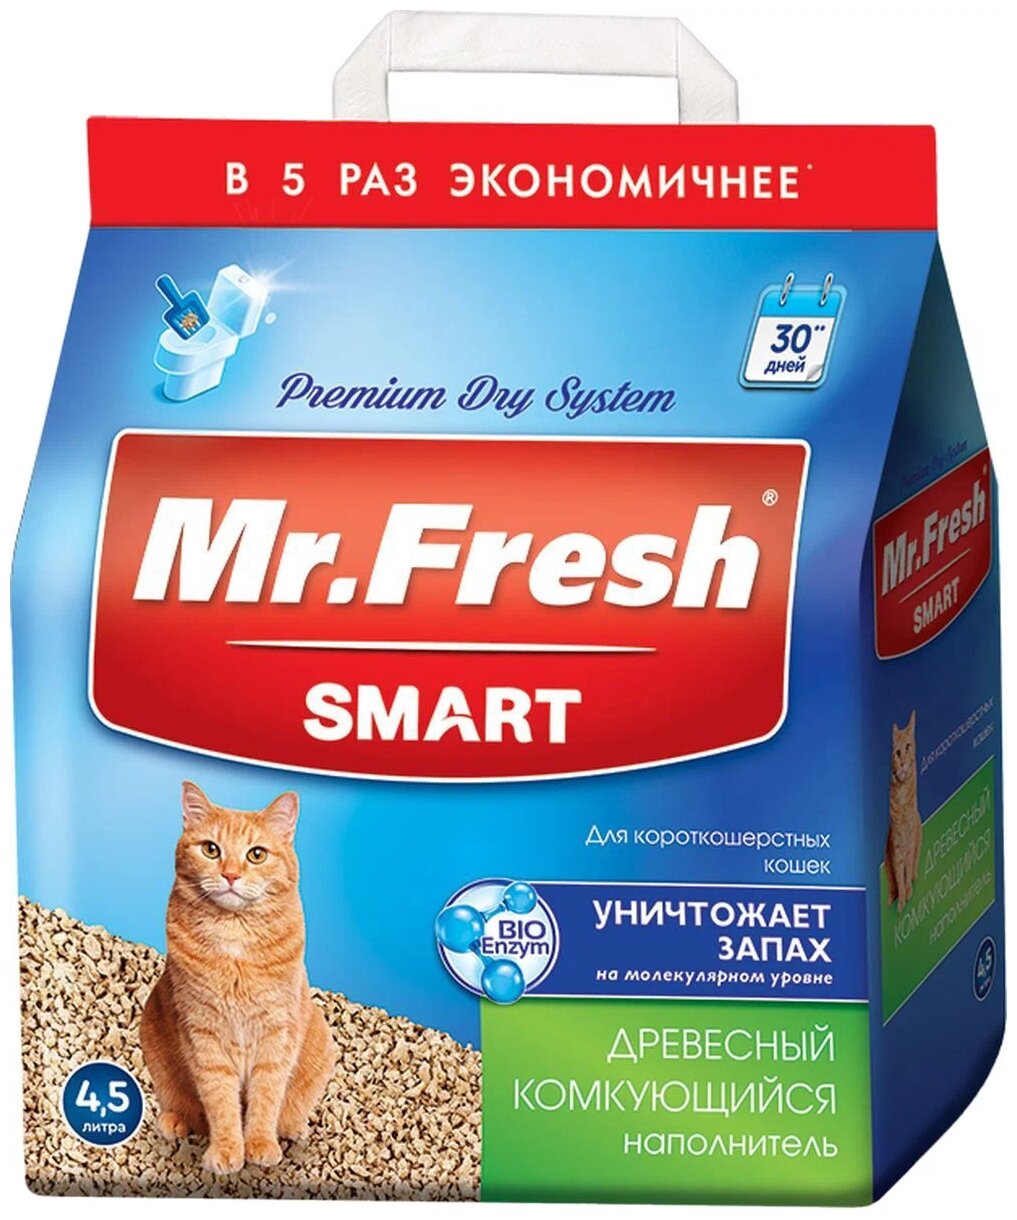 Древесный комкующийся наполнитель Mr.Fresh Smart для короткошерстных кошек 4,5л/2,1кг